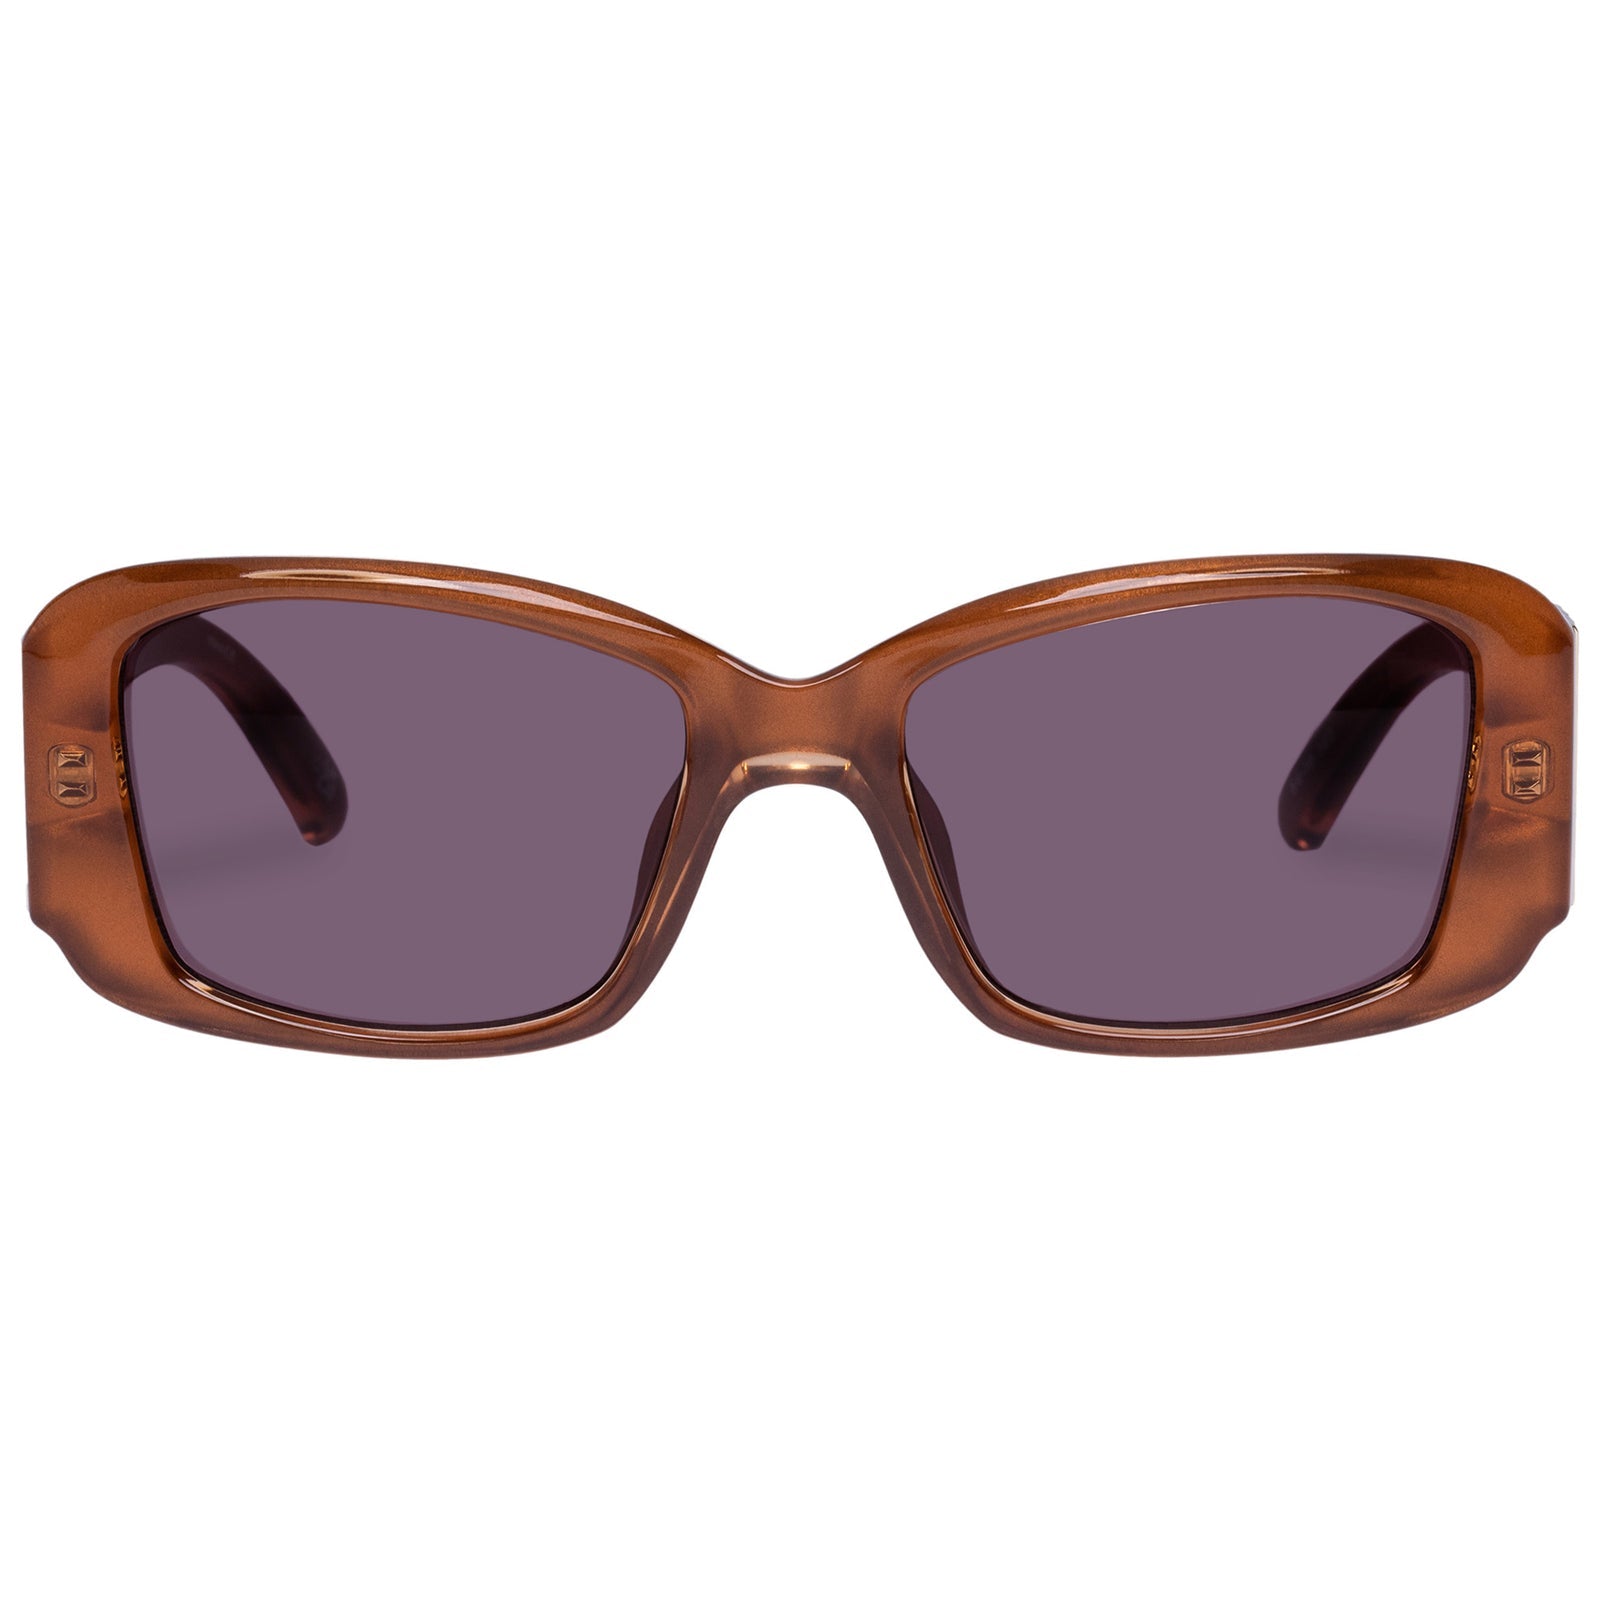 Le Specs Sunglasses - Nouveau Riche - Caramel